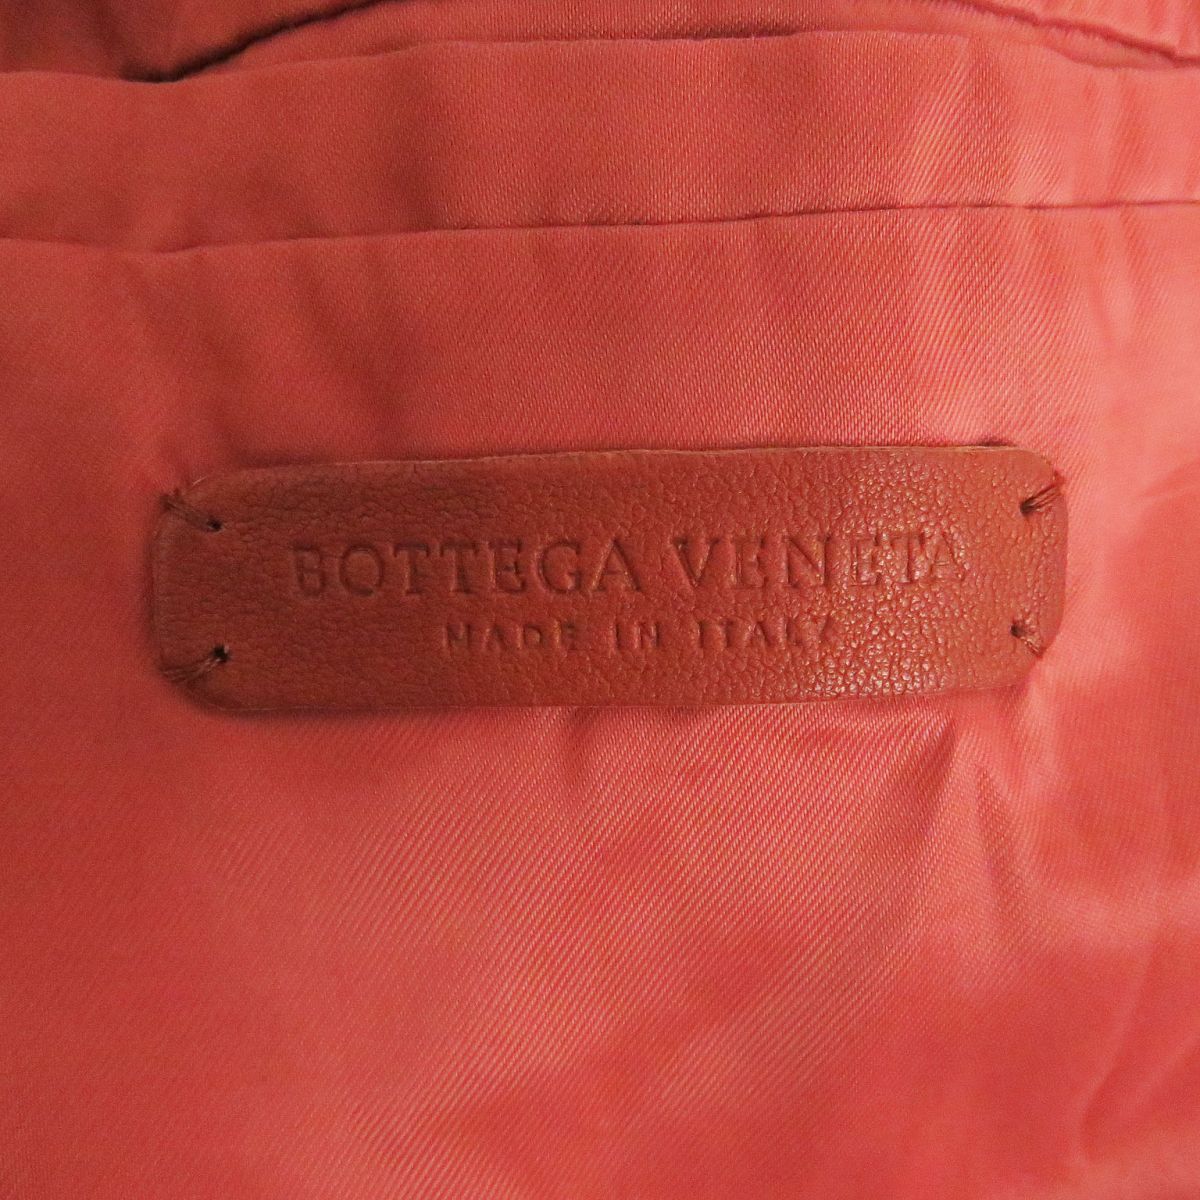 良品□BOTTEGA VENETA/ボッテガヴェネタ ラムスキン イントレチャート ジップアップ レザーブルゾンジャケット ブラウン系 46 イタリア製